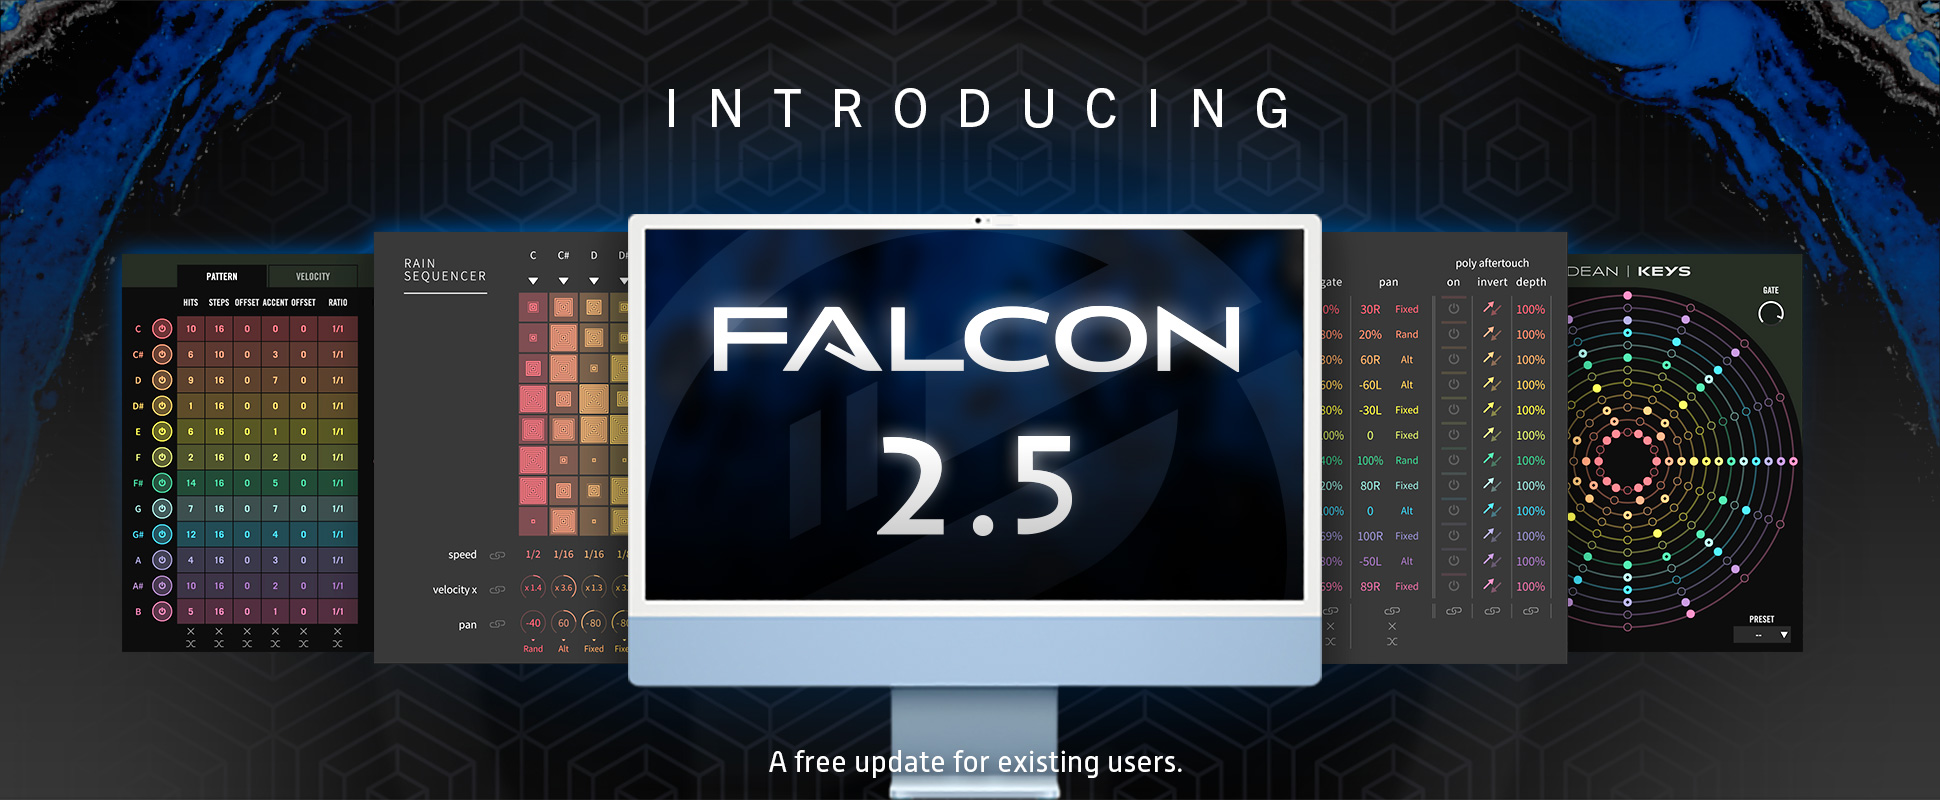 Falcon 2.5 - New